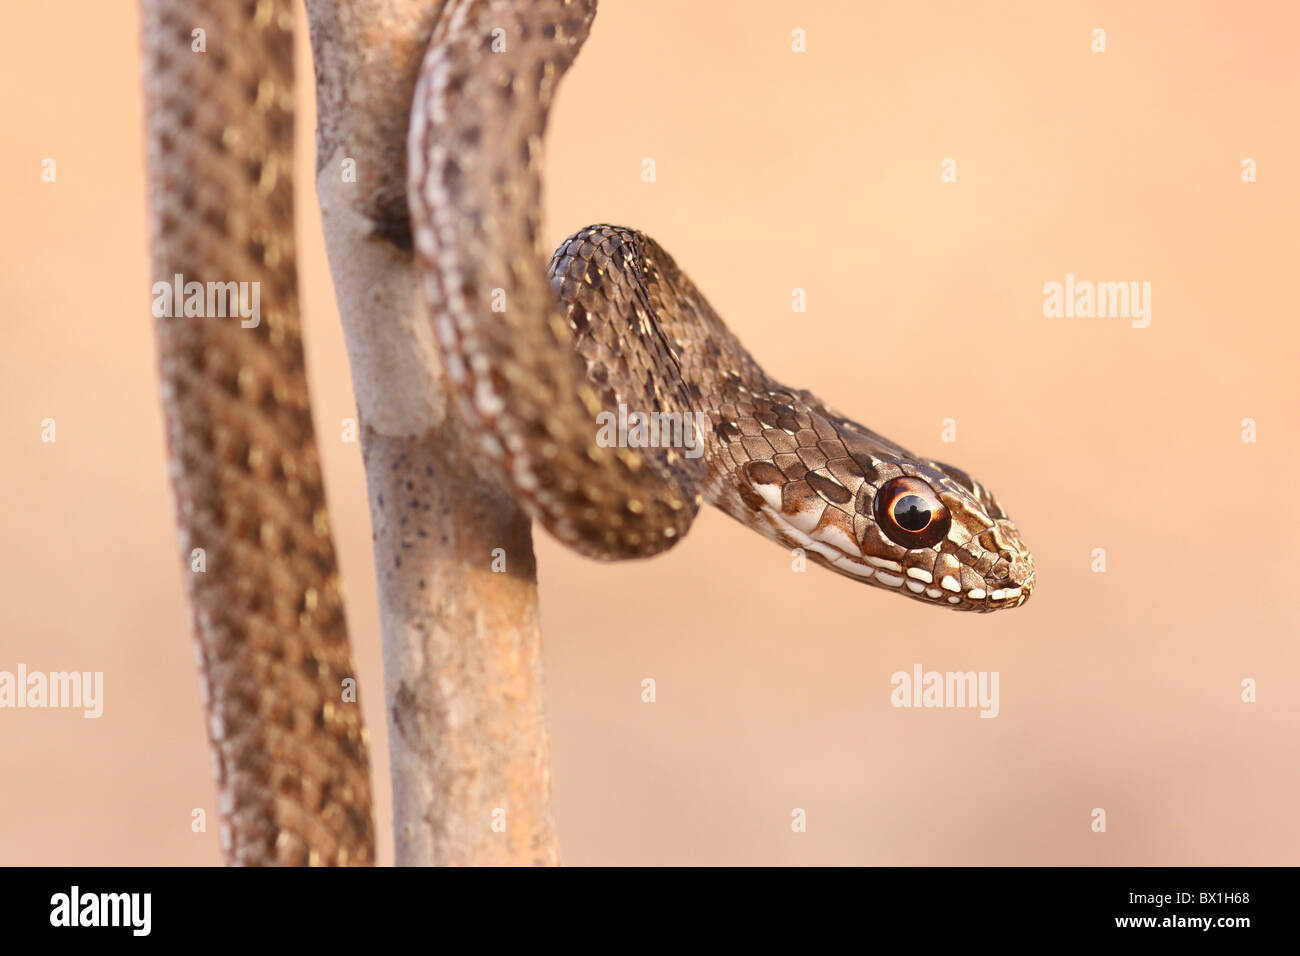 Juvenile Montpellier snake (Malpolon monspessulanus) Stock Photo